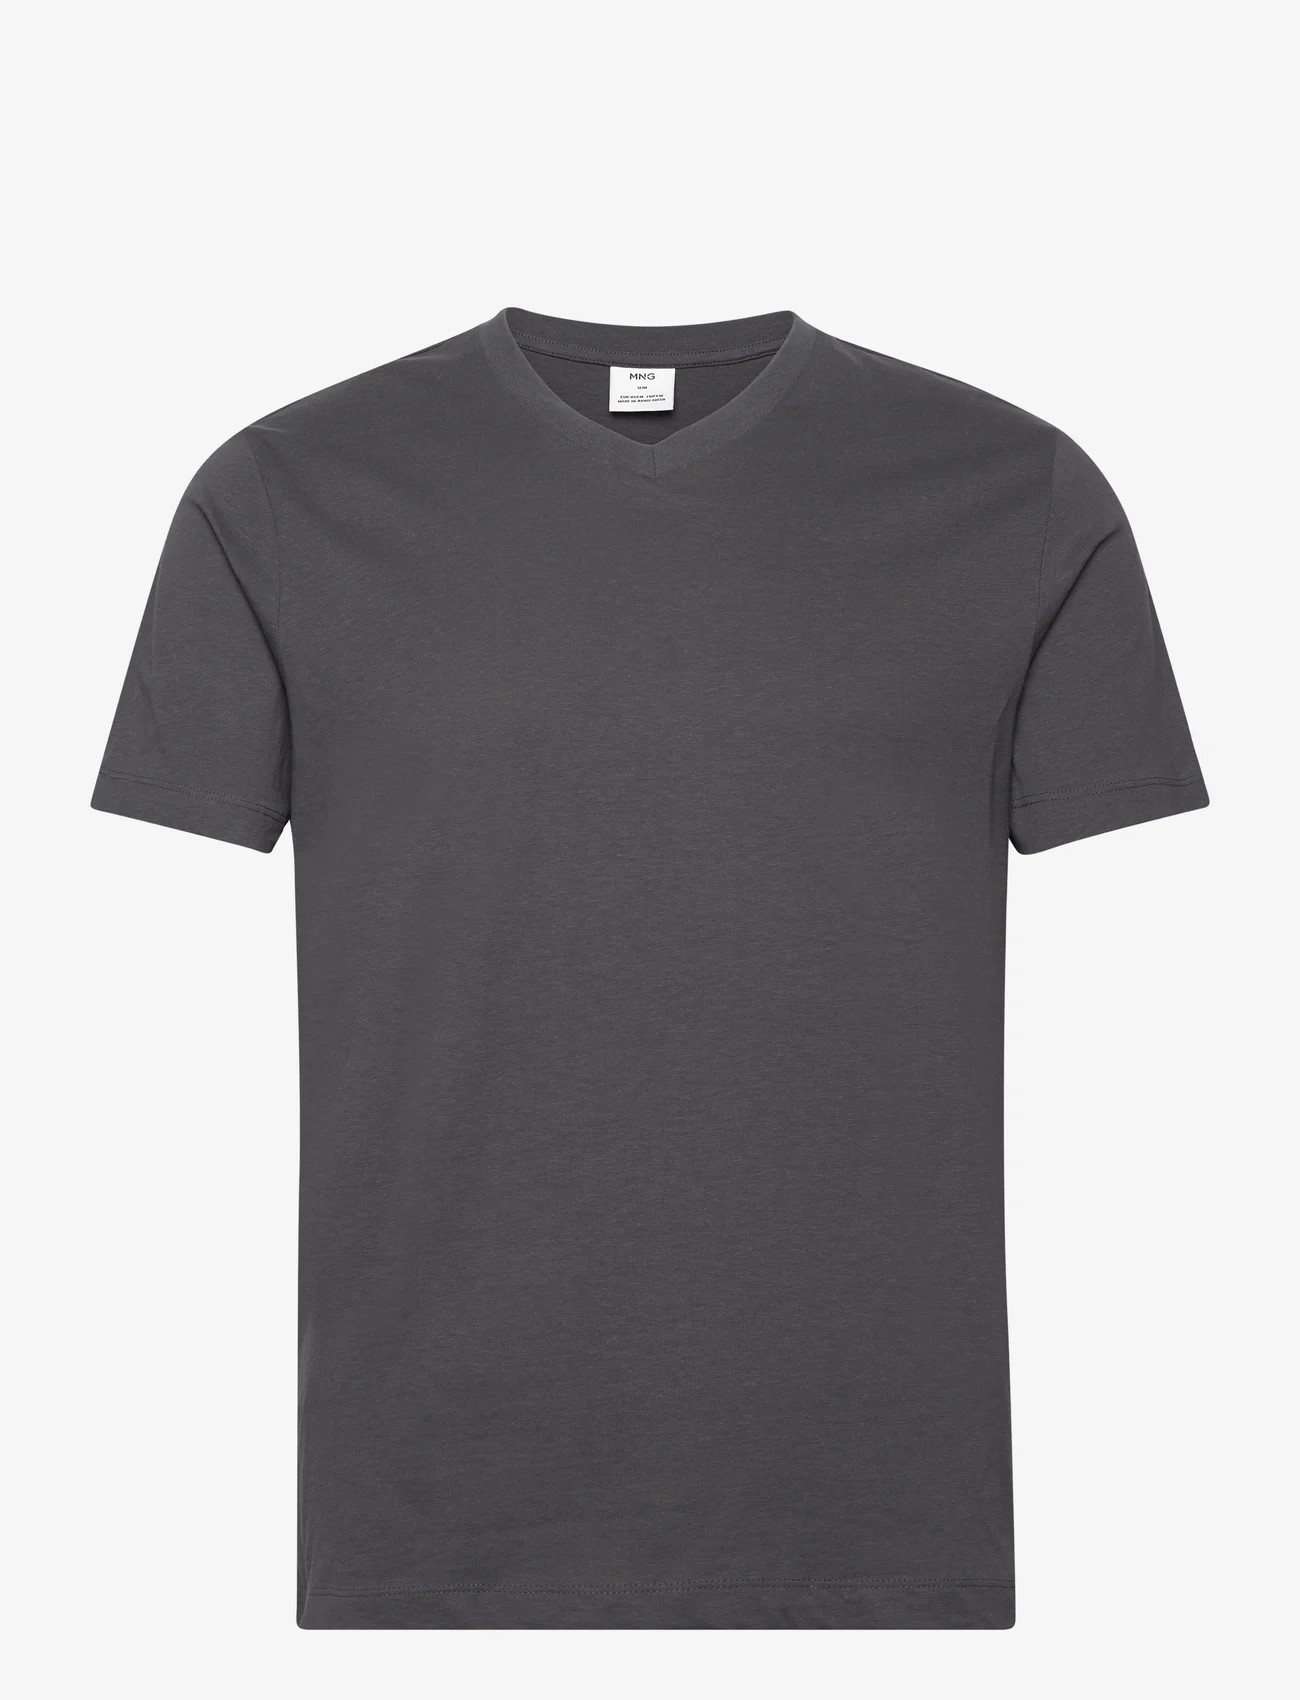 Mango - Basic cotton V-neck T-shirt - lägsta priserna - dark grey - 0